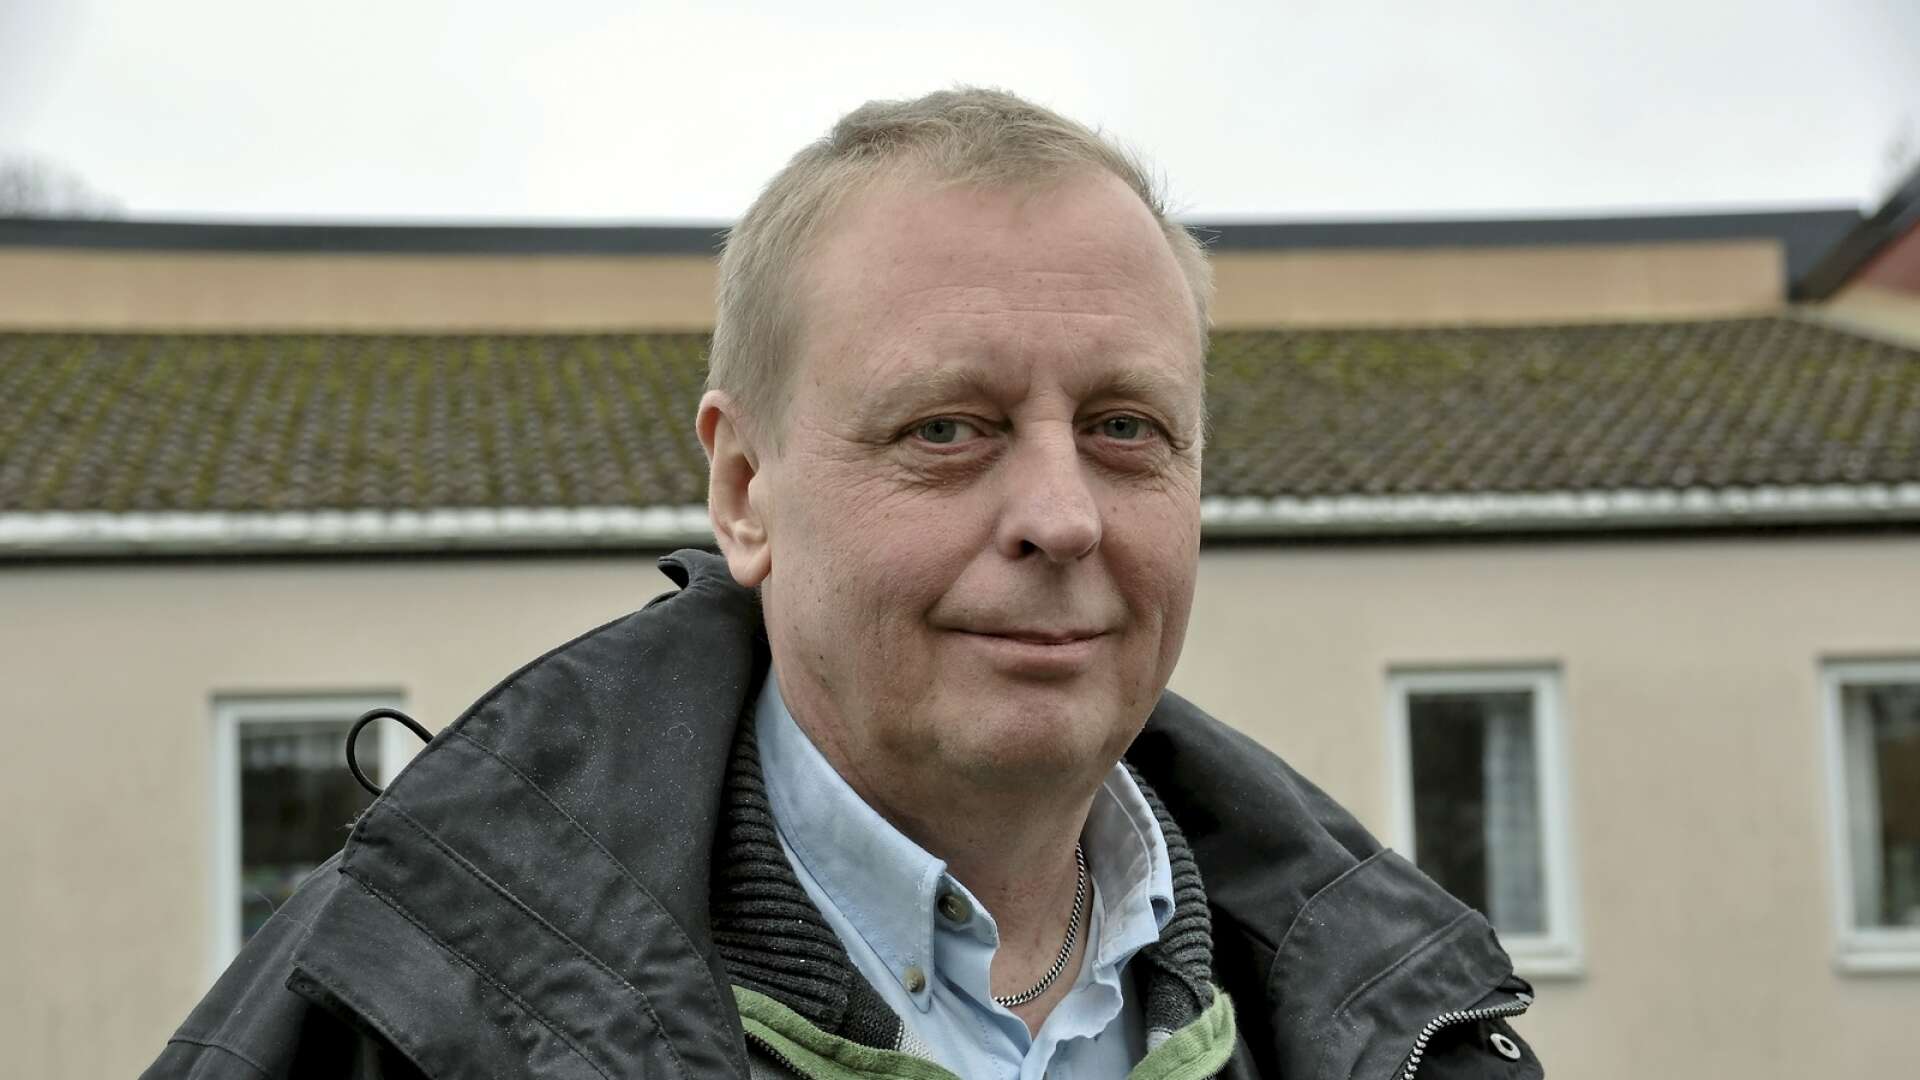 Det kommunala bostadsbolaget Bengsforshus skakas sedan allvarliga anklagelser riktats mot vd Pär Nilsson.